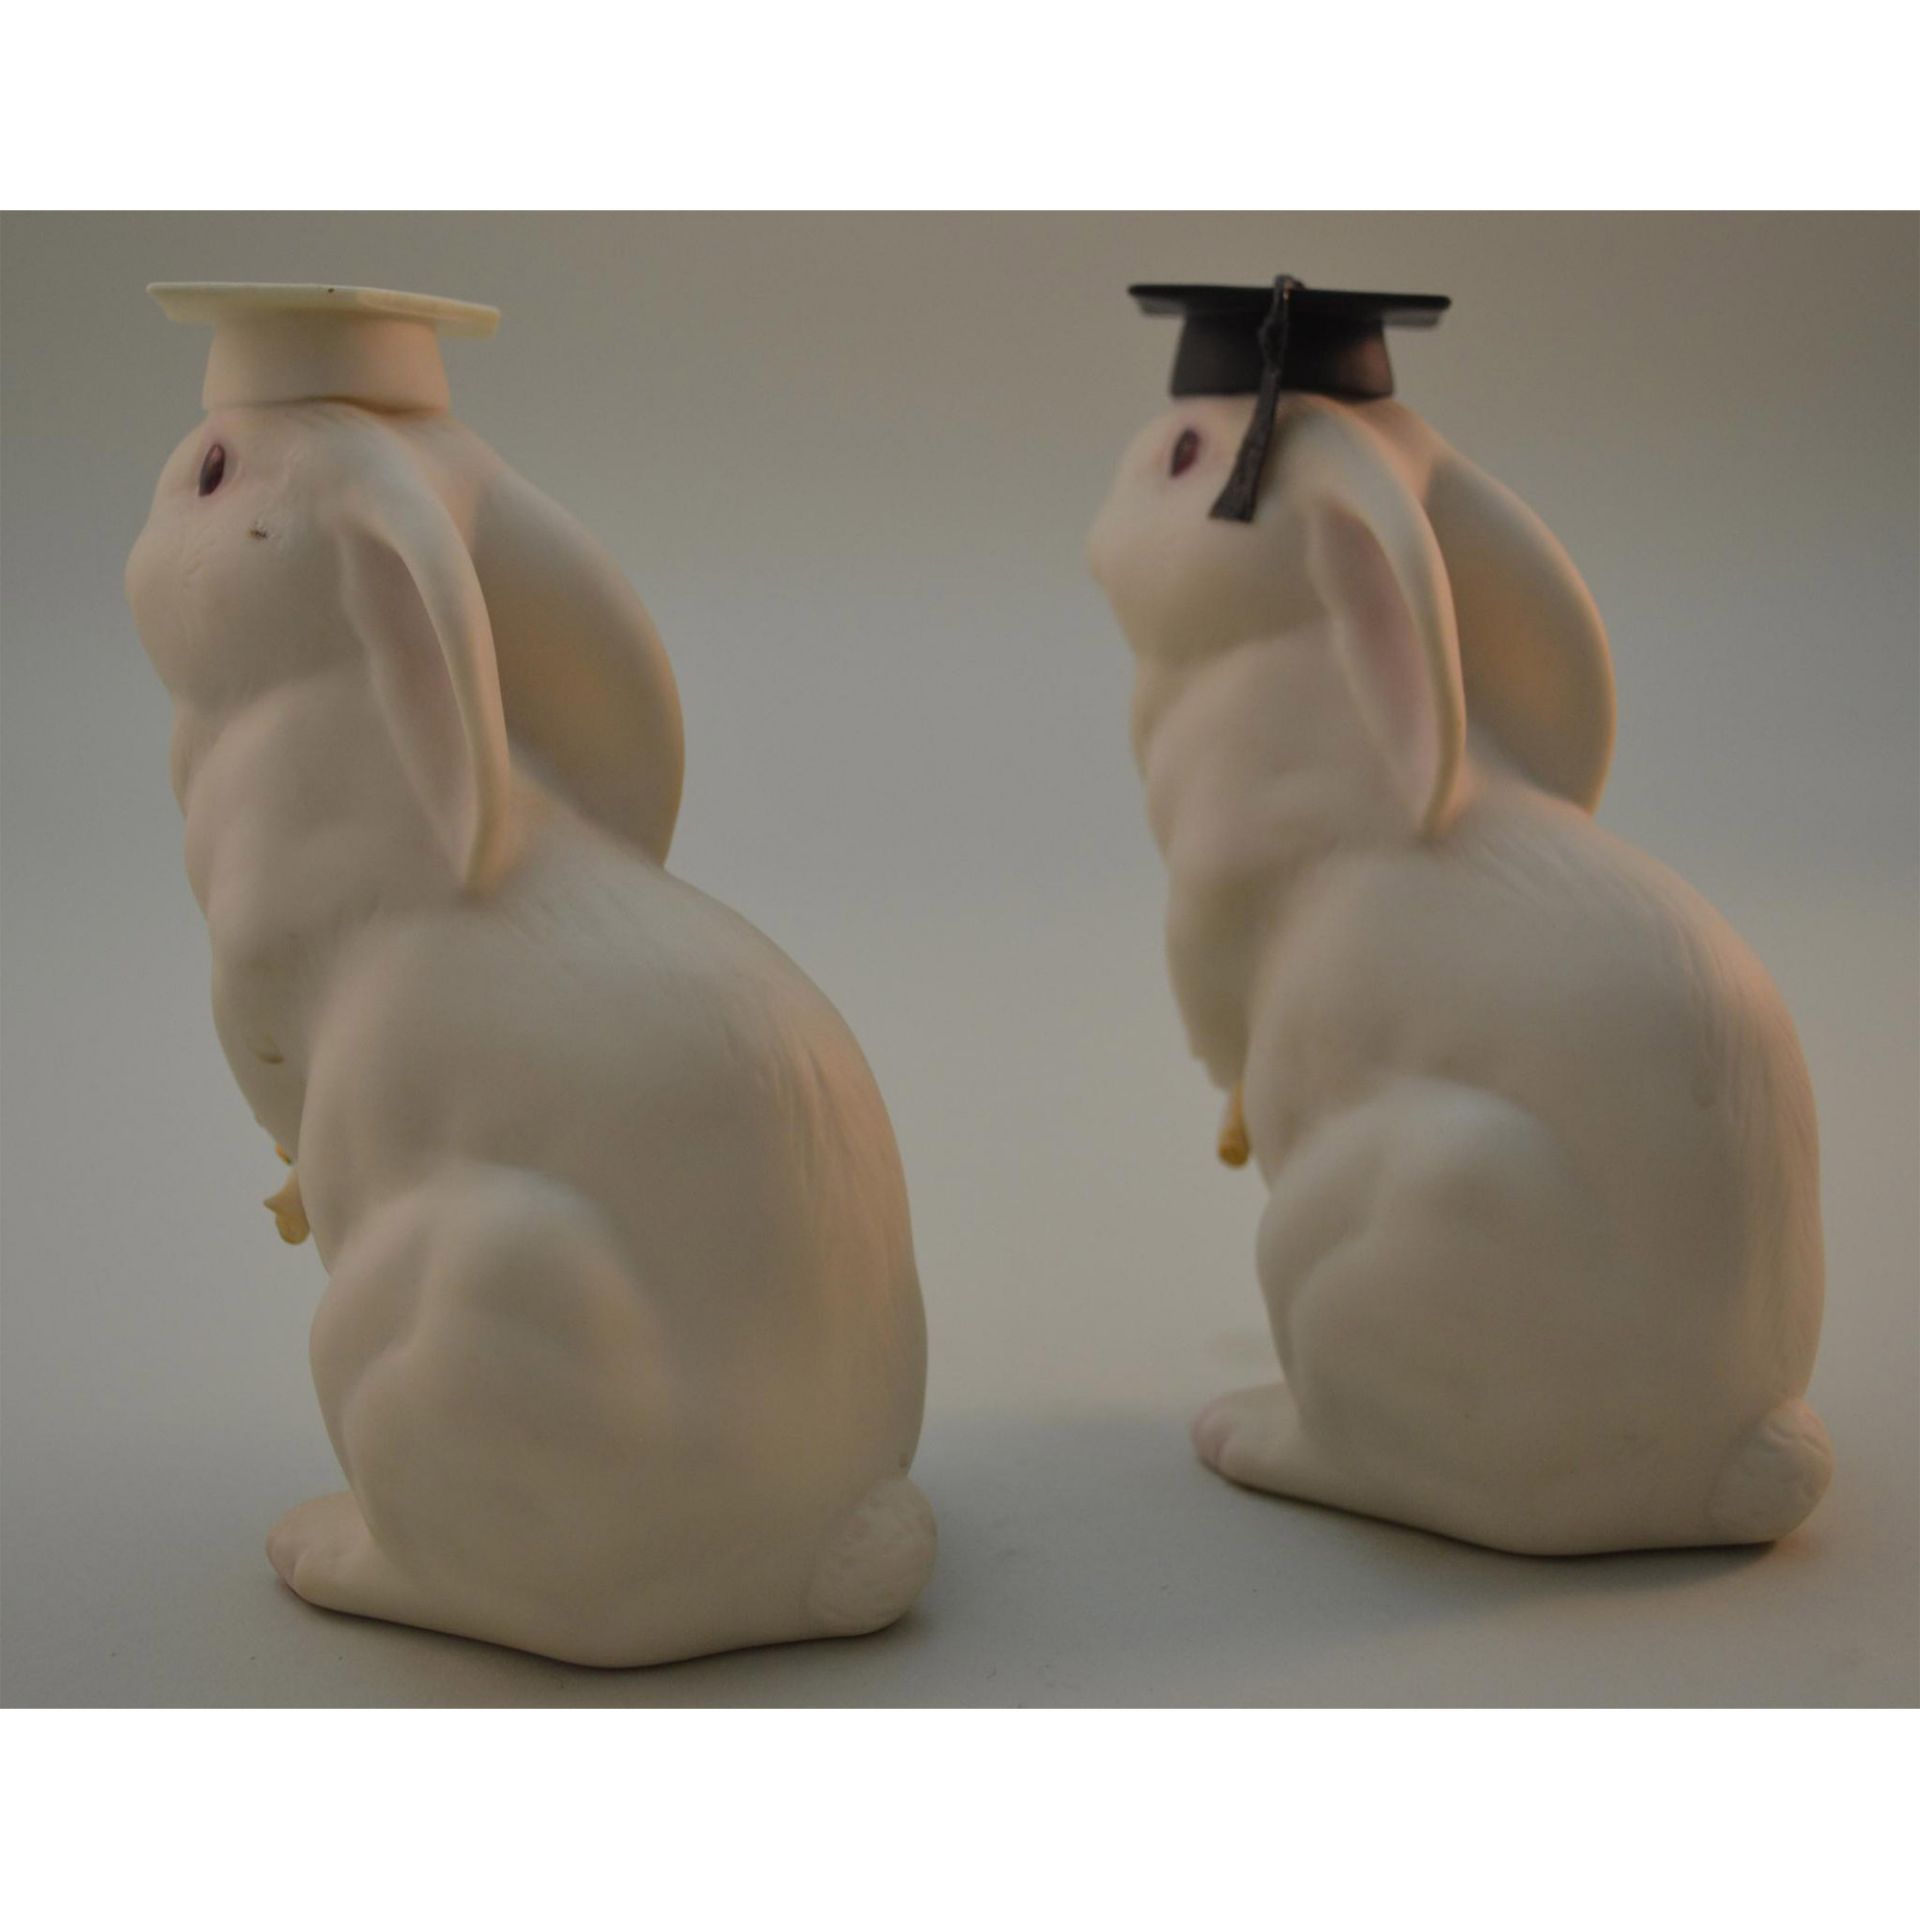 Cybis Porcelain Bunnies, The Graduates, Pair - Image 3 of 4